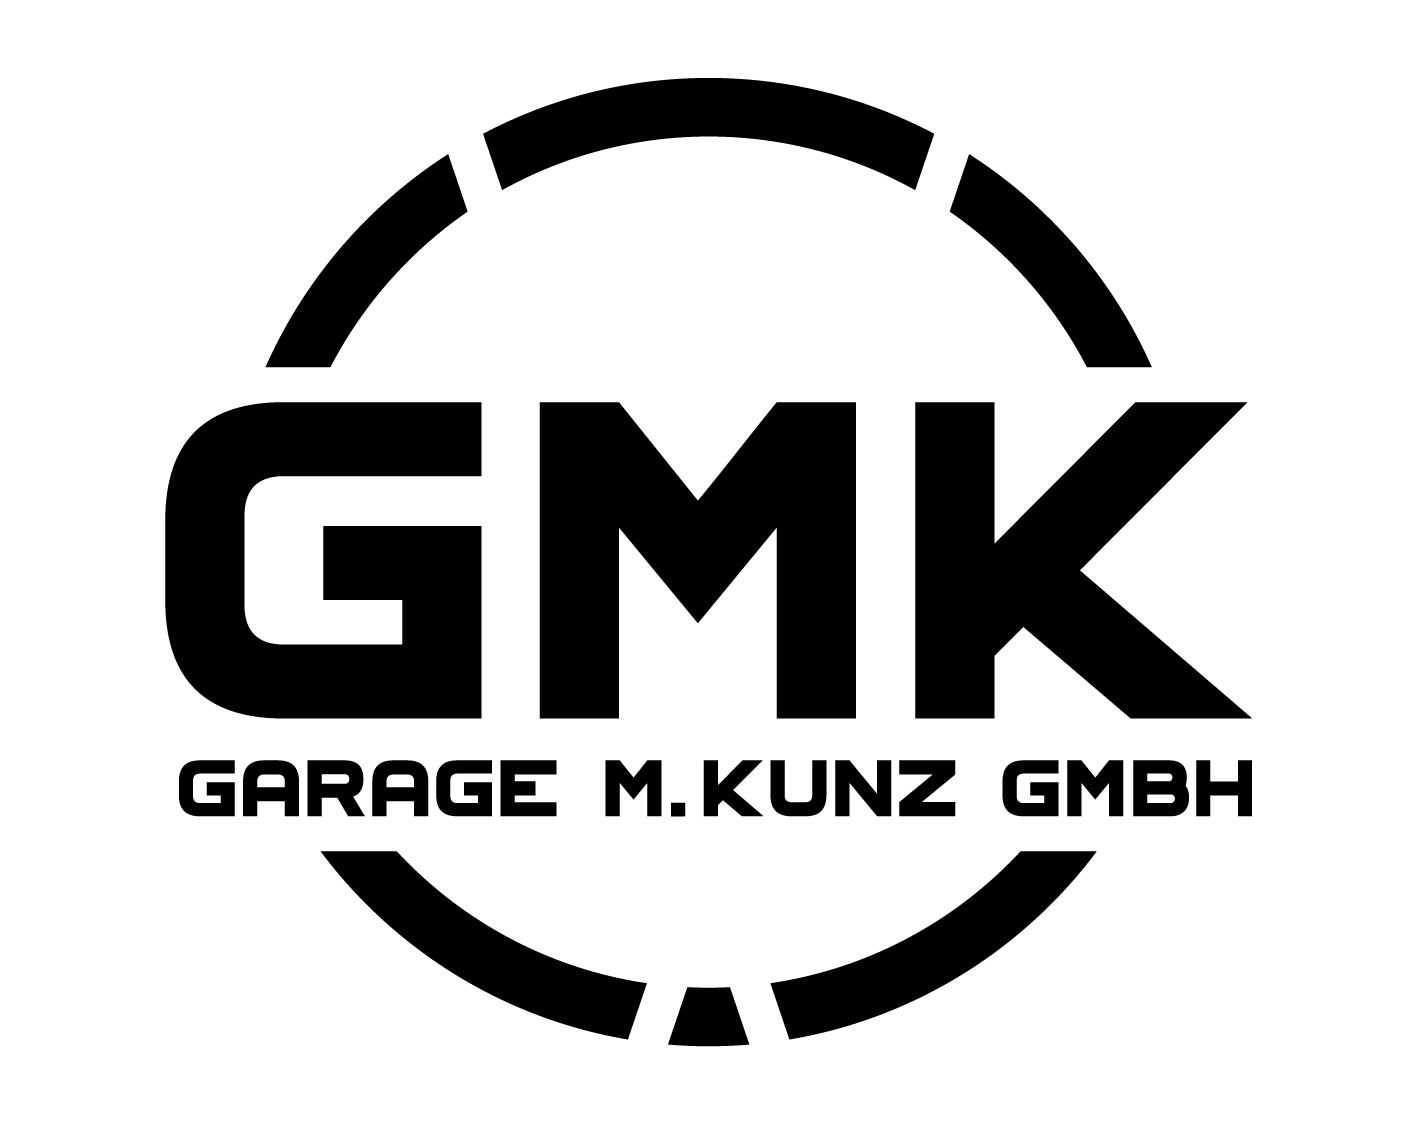 Garage M. Kunz GmbH